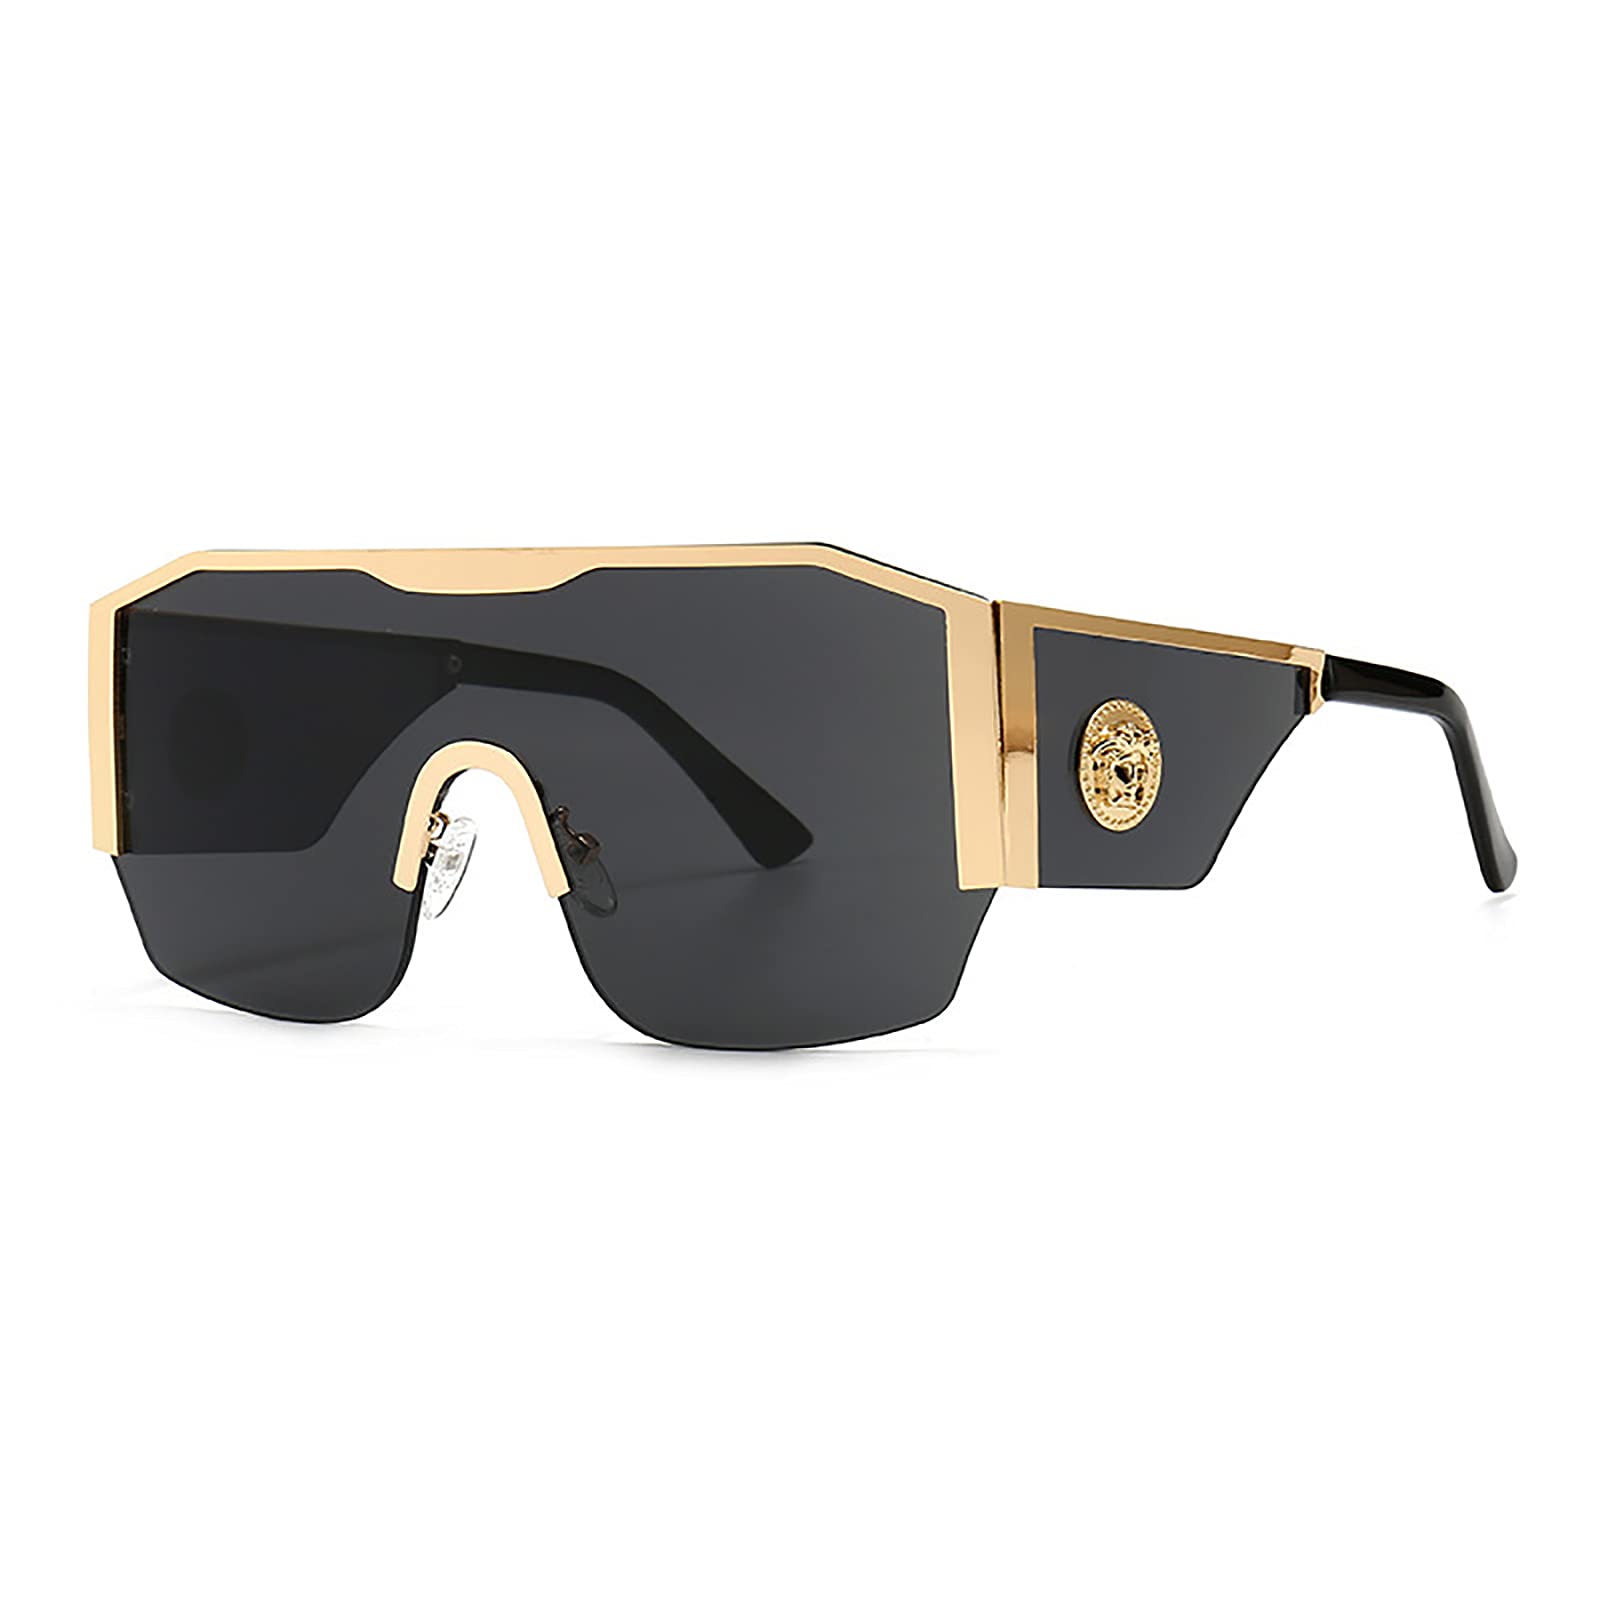 QFSLR Retro Big Frame Herren Sonnenbrille 100% UV-Schutz Mode Damen Sonnenbrille,C